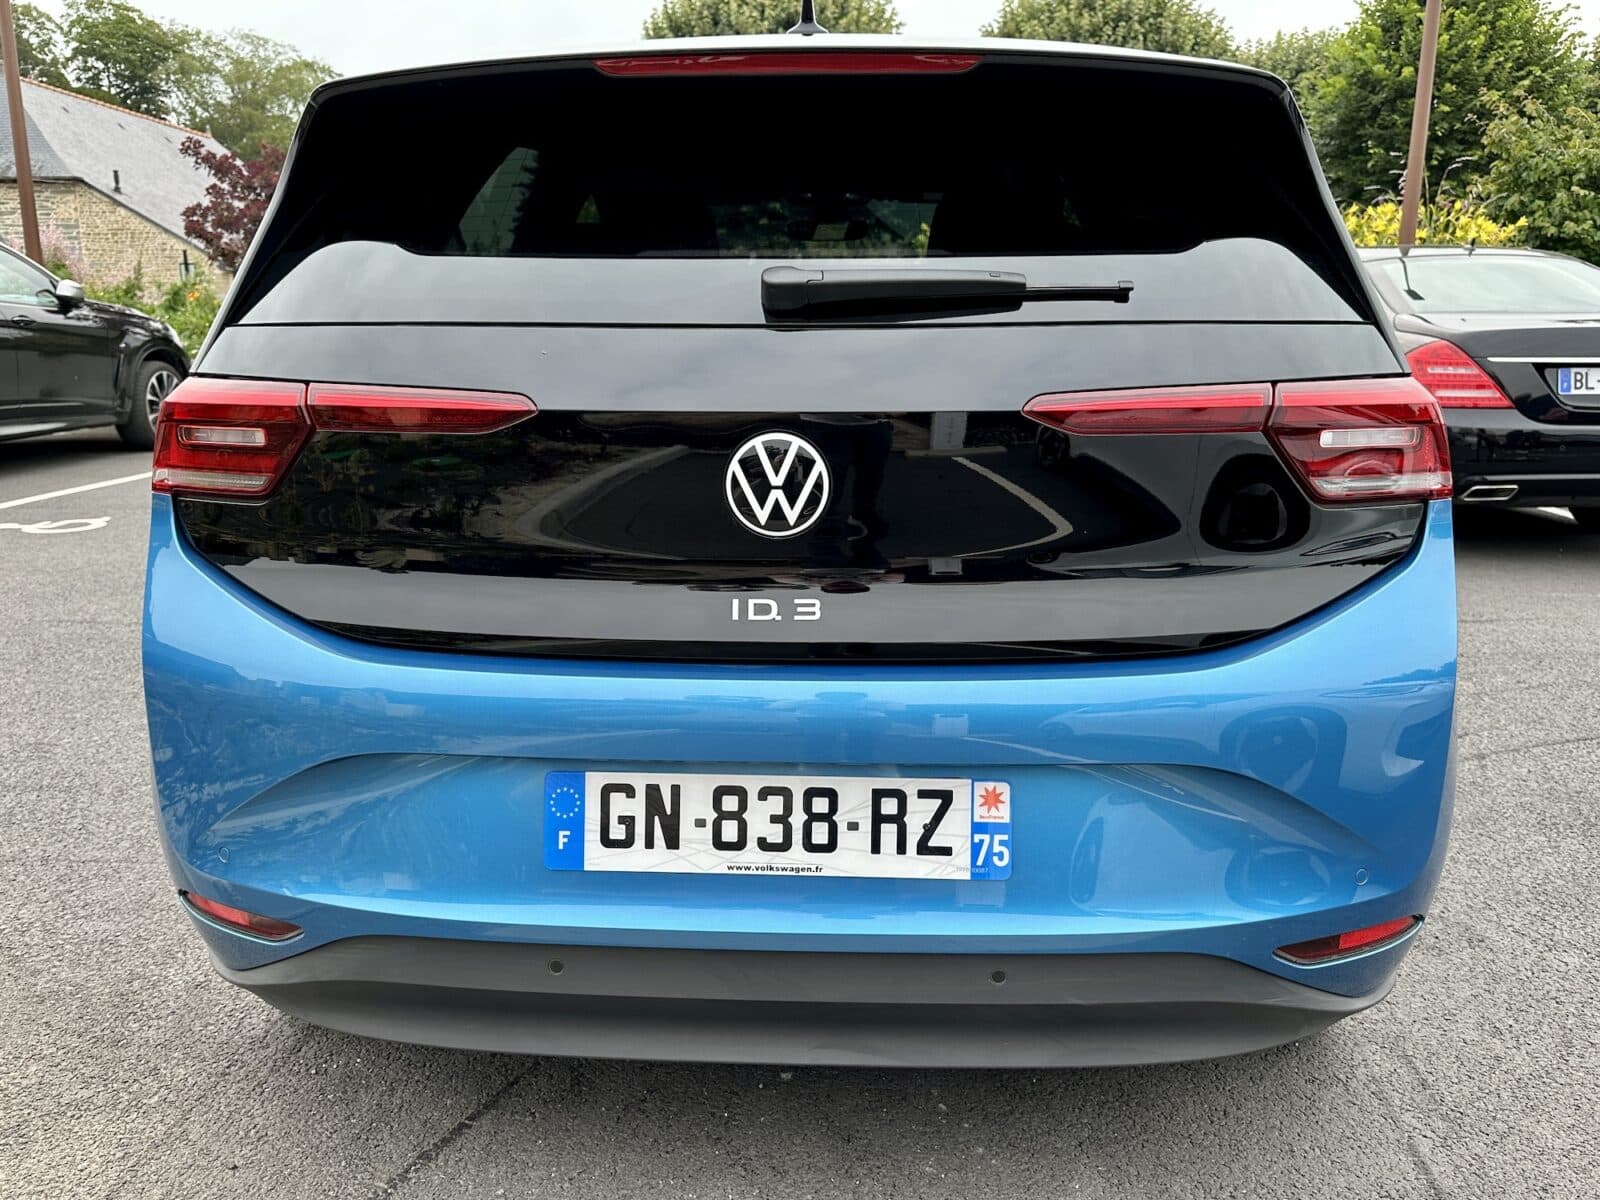 Essai Volkswagen ID.3 voiture electrique